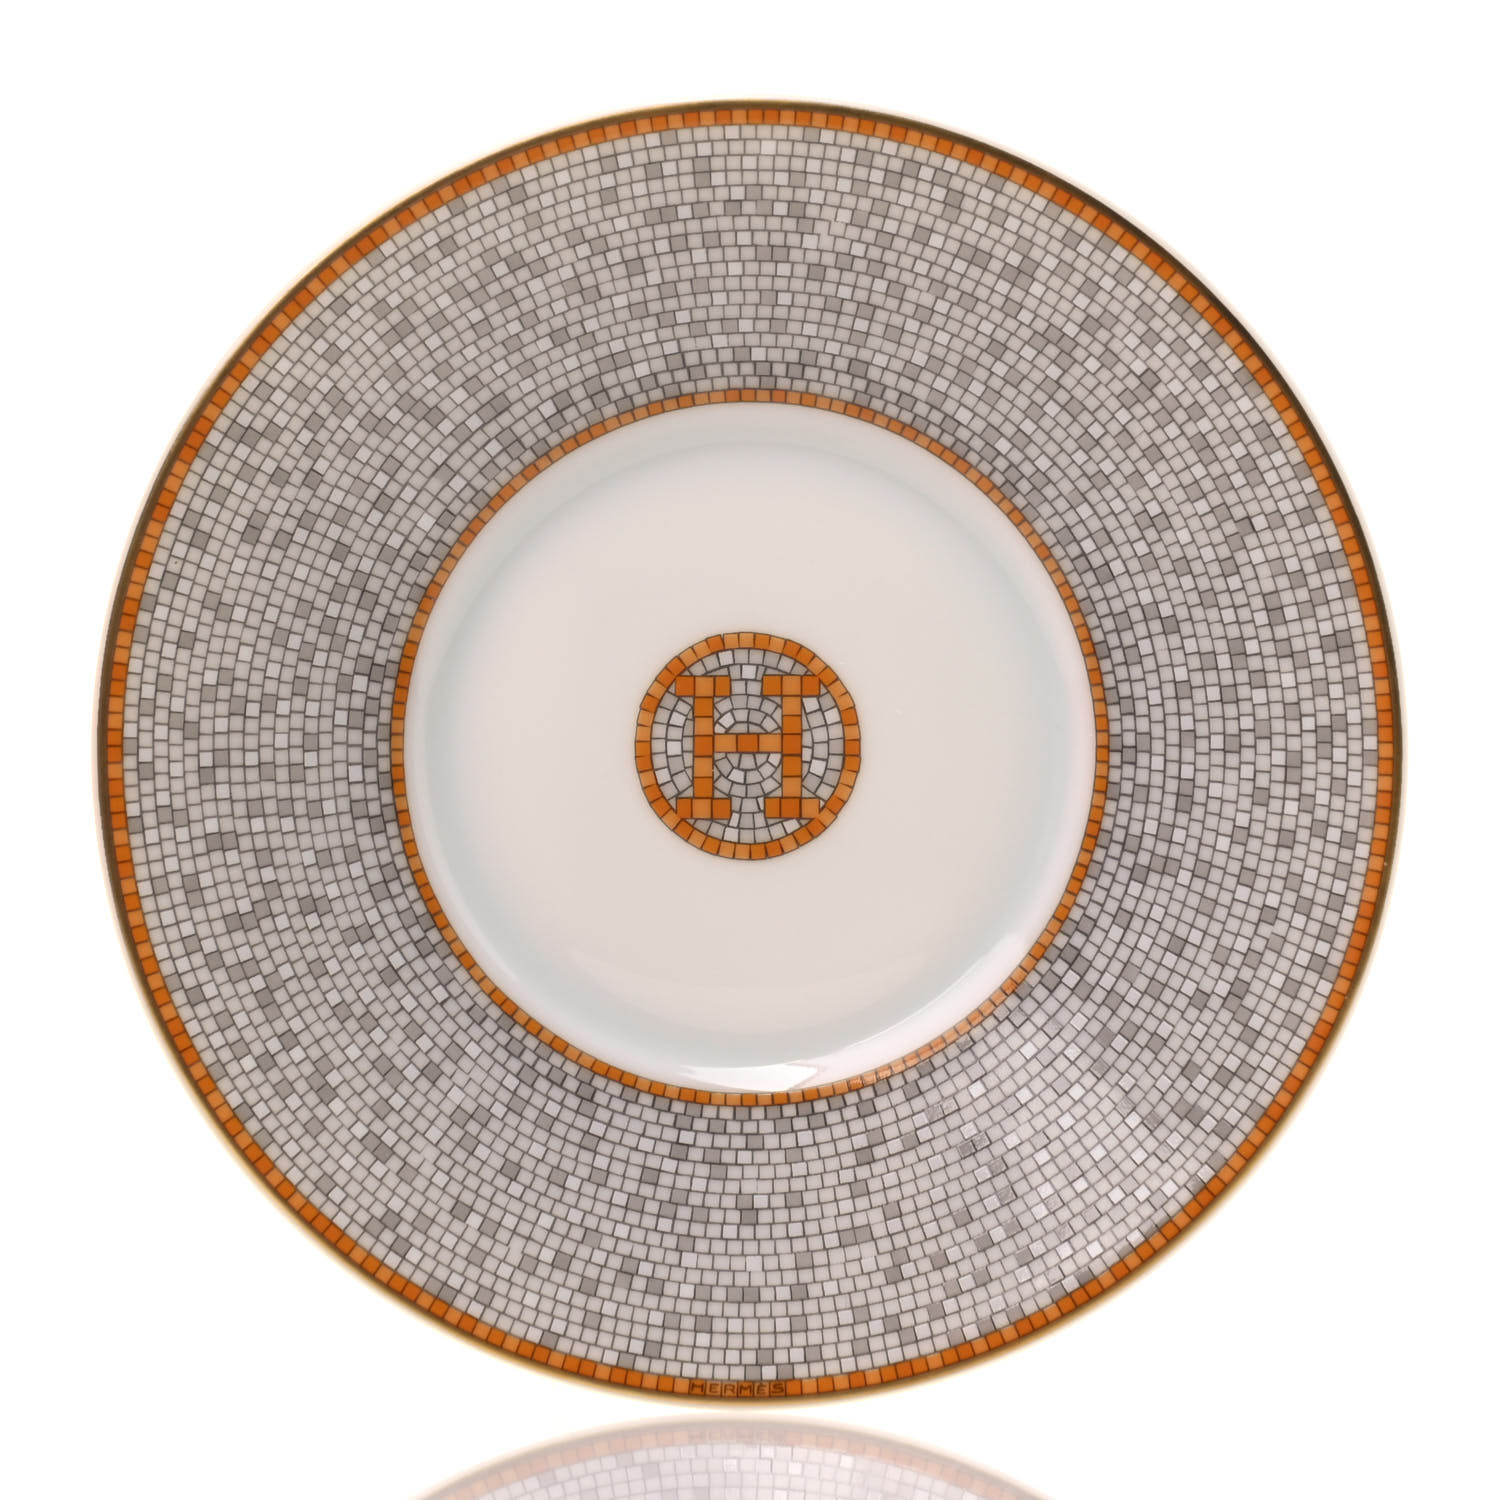 Hermes Porcelain Mosaique Au 24 Porcelain Tea Cup And Saucer Set Of 2 5452